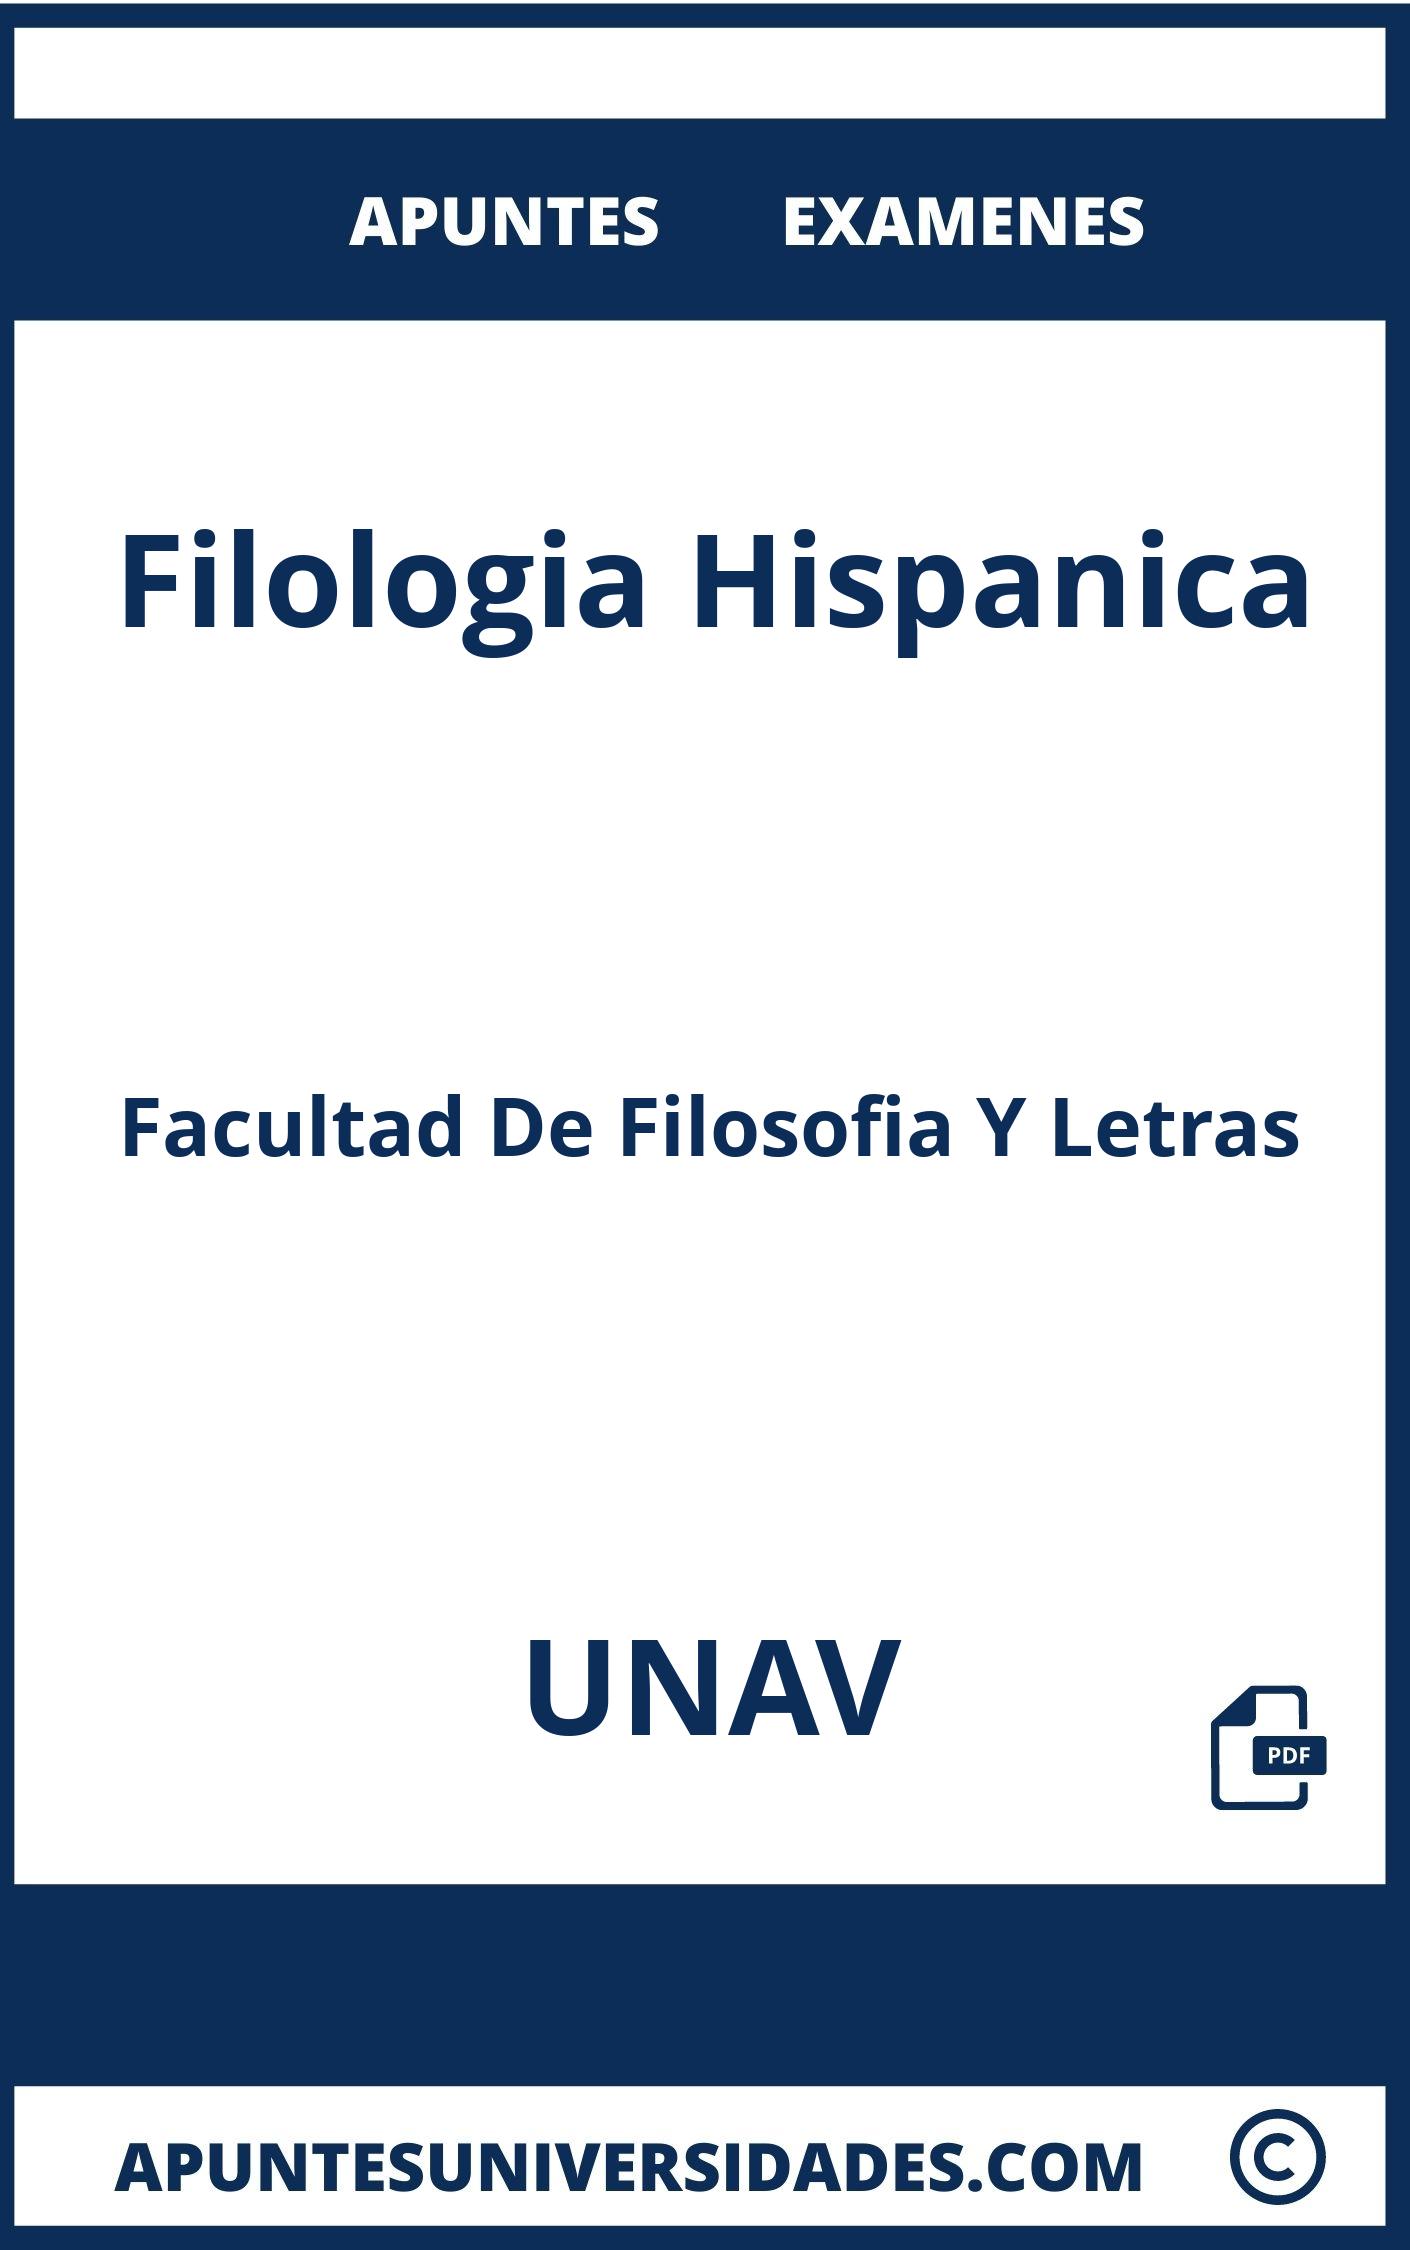 Examenes y Apuntes Filologia Hispanica UNAV